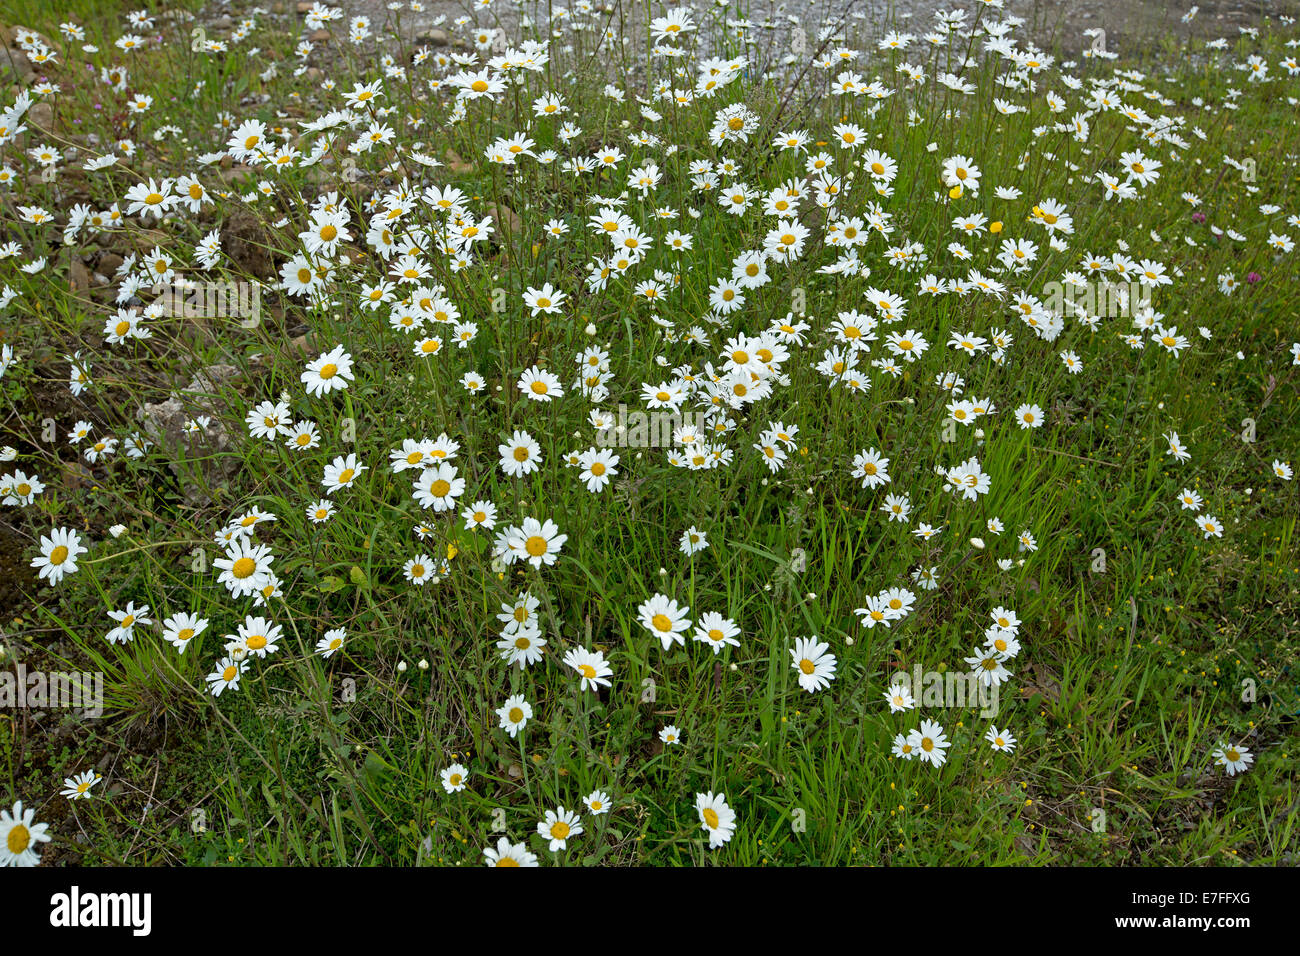 Swathe of common British wildflowers - white oxeye daisies, Leucanthemum vulgare, and emerald green foliage Stock Photo